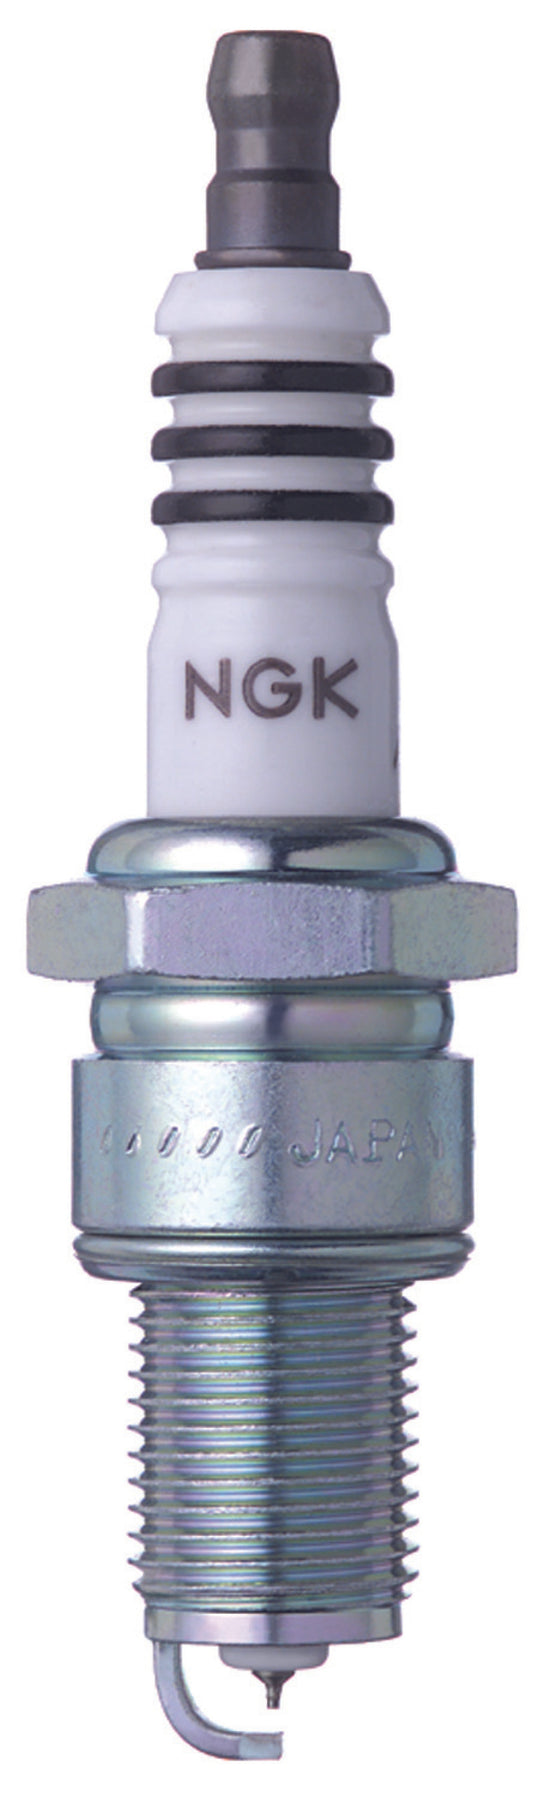 NGK IX Iridium Spark Plug Box of 4 (BPR5EIX-11)